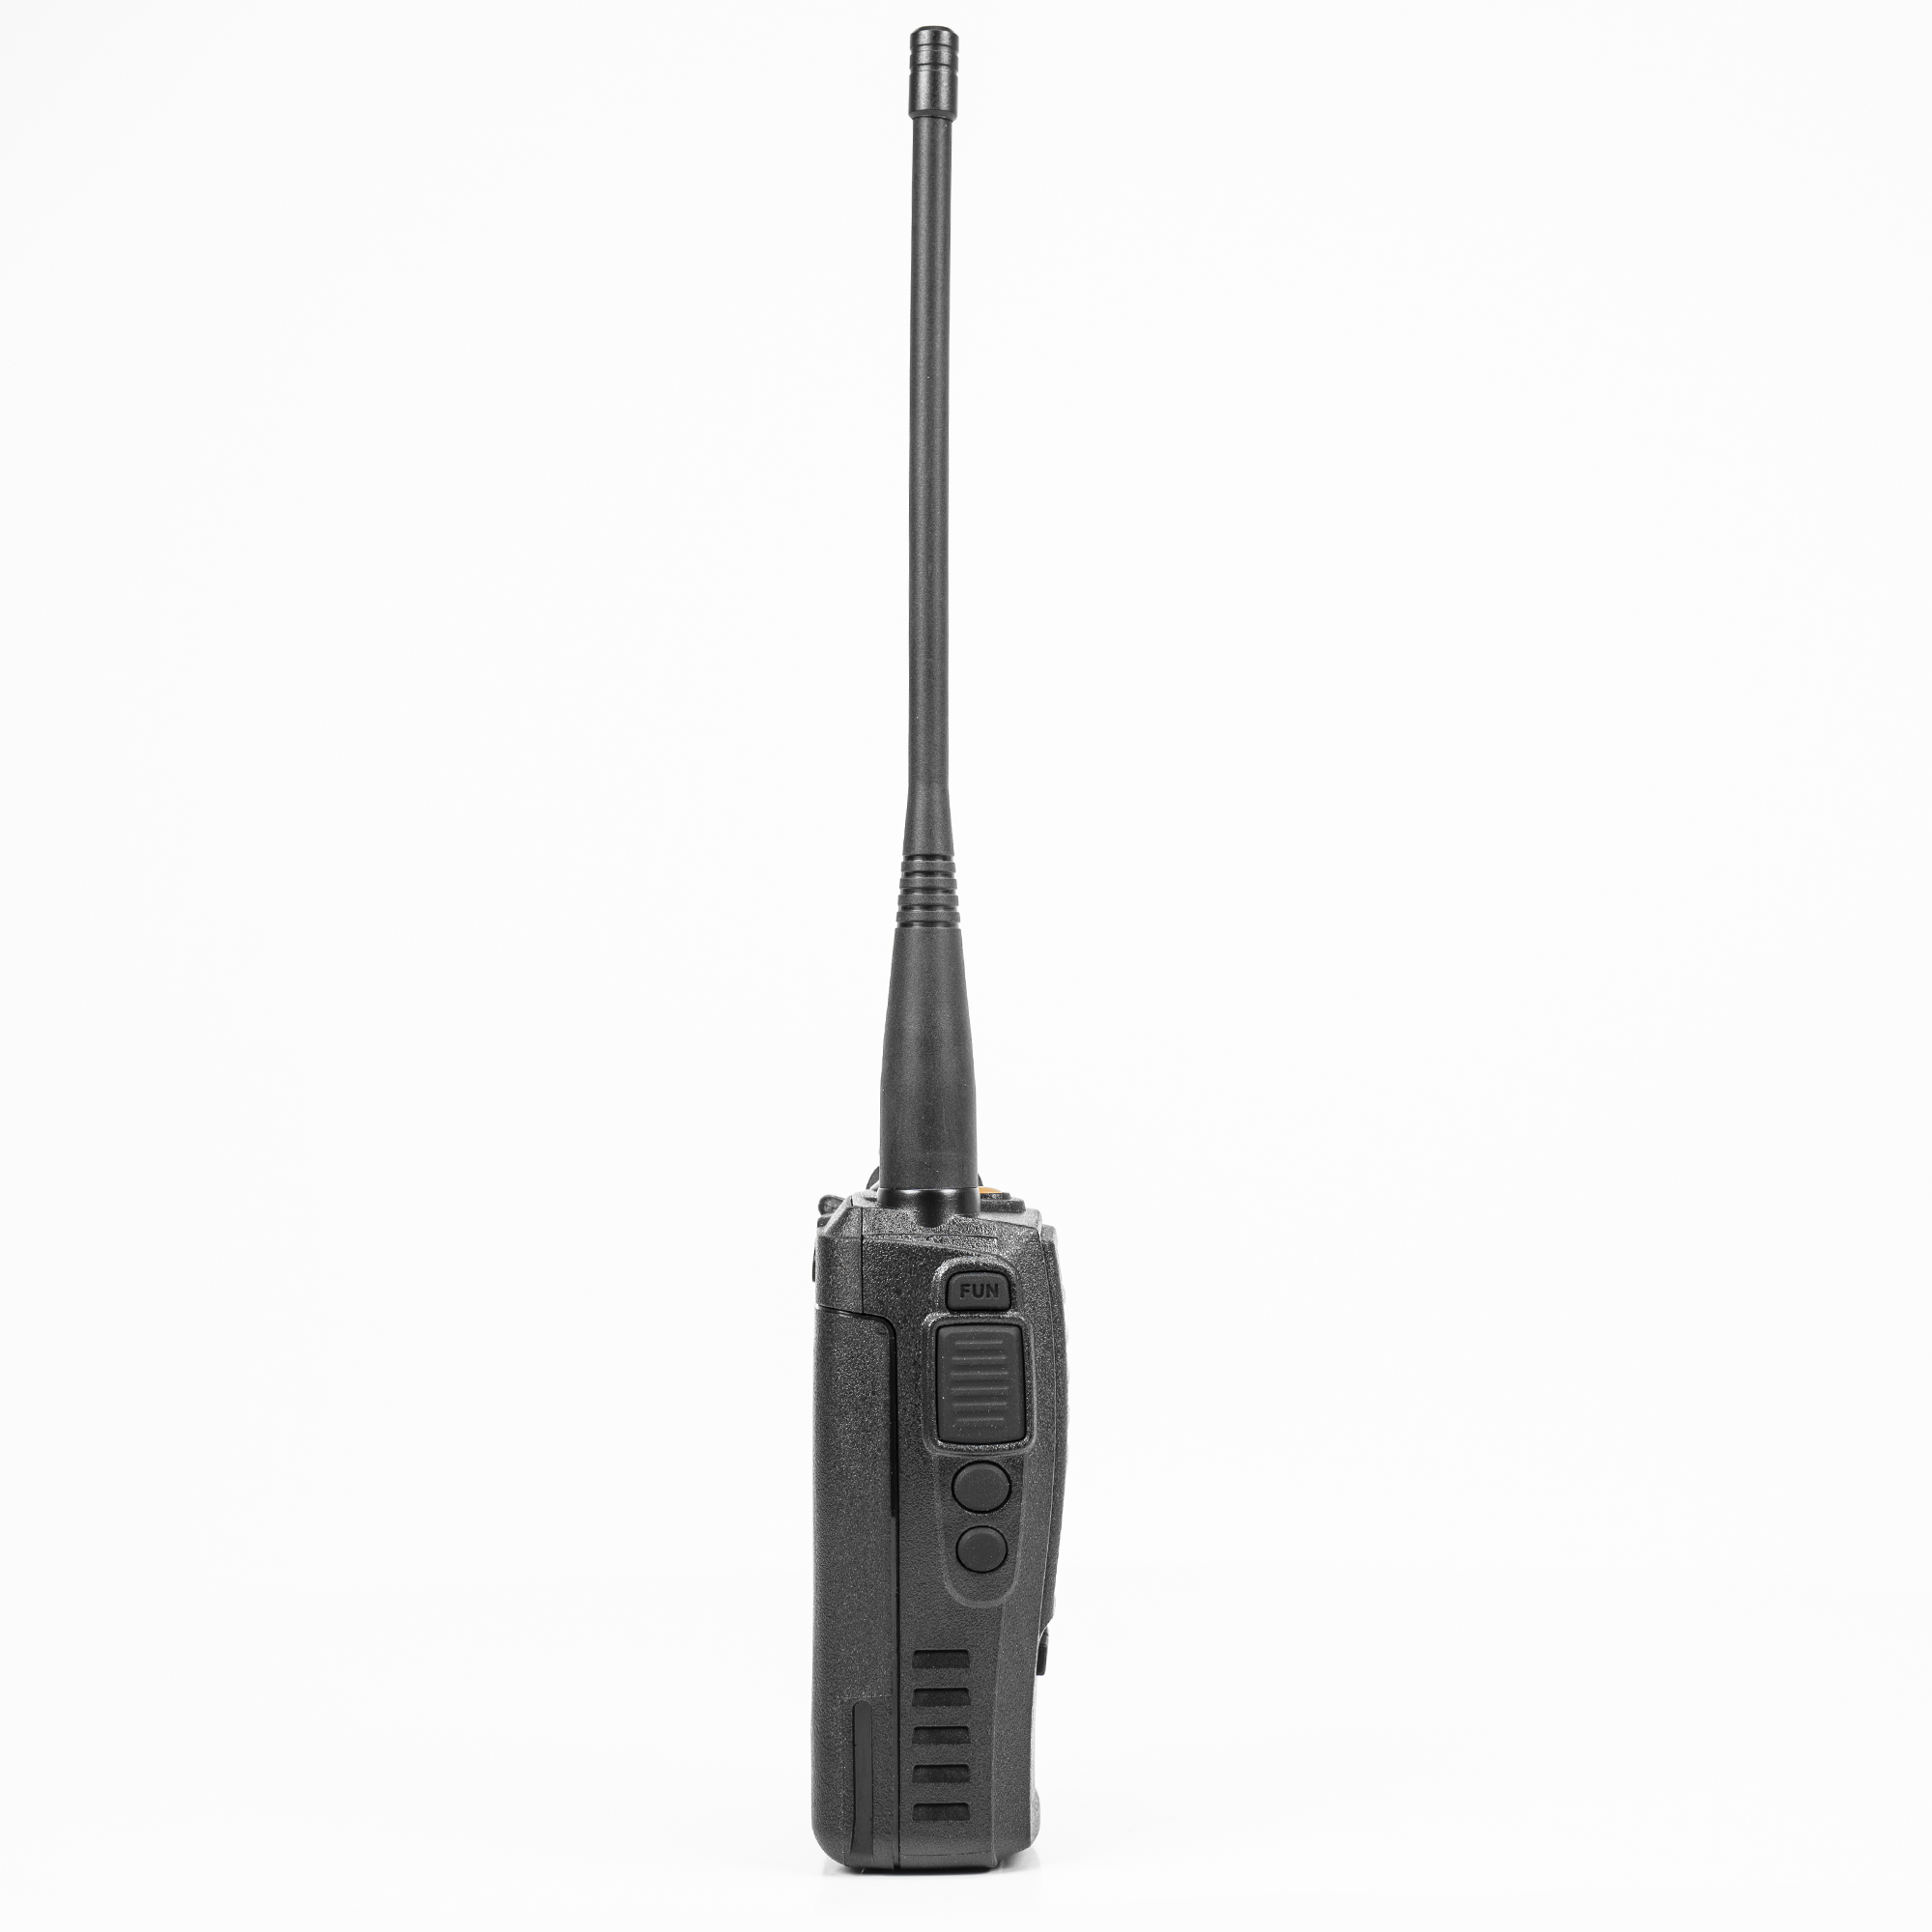 Statie radio portabila VHF PNI Dynascan V-600, 136-174 MHz, IP67, Scan, Scrambler, VOX image2